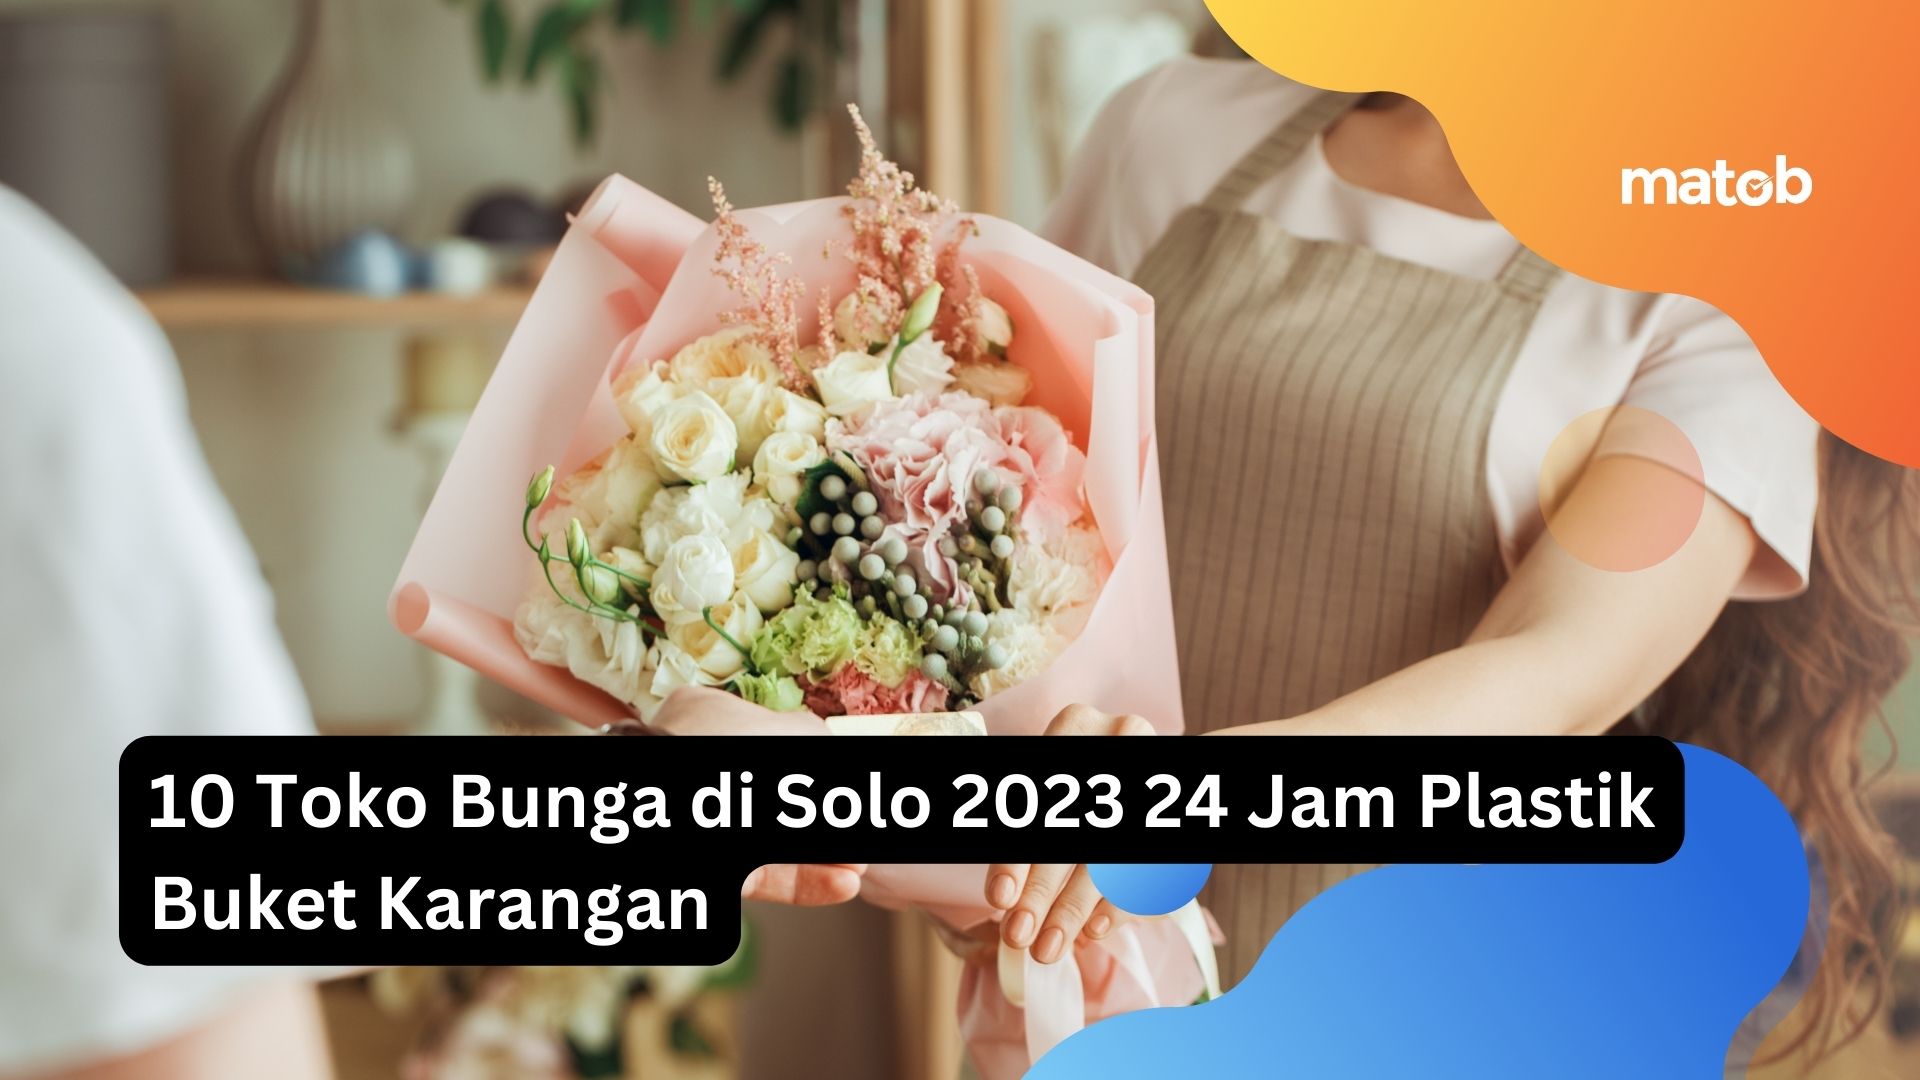 10 Toko Bunga di Solo 2023 24 Jam Plastik Buket Karangan